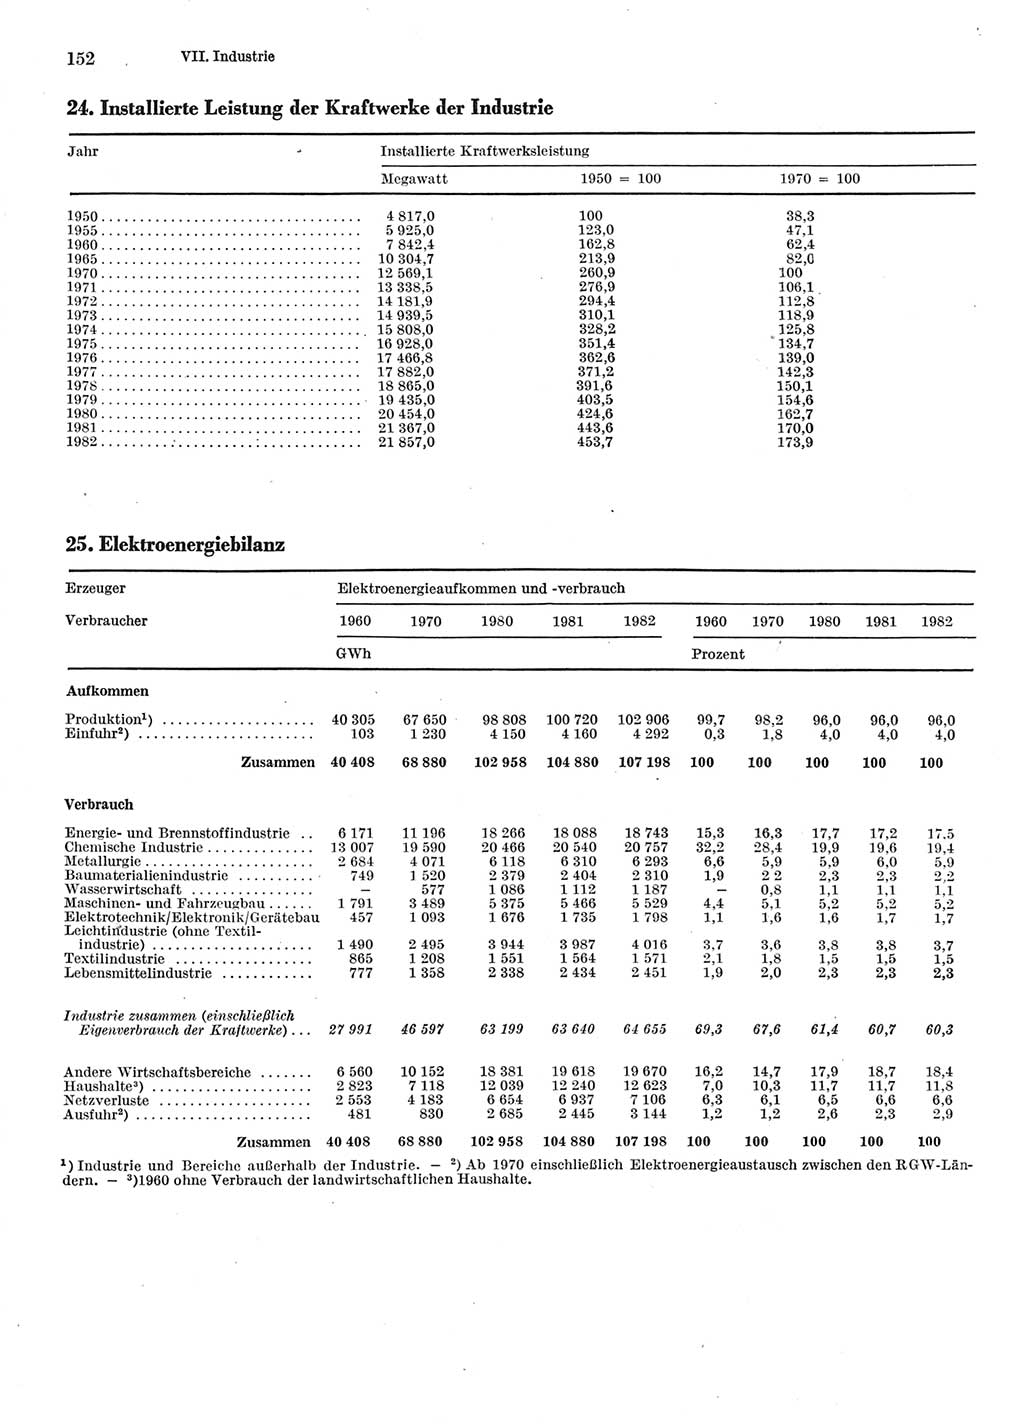 Statistisches Jahrbuch der Deutschen Demokratischen Republik (DDR) 1983, Seite 152 (Stat. Jb. DDR 1983, S. 152)